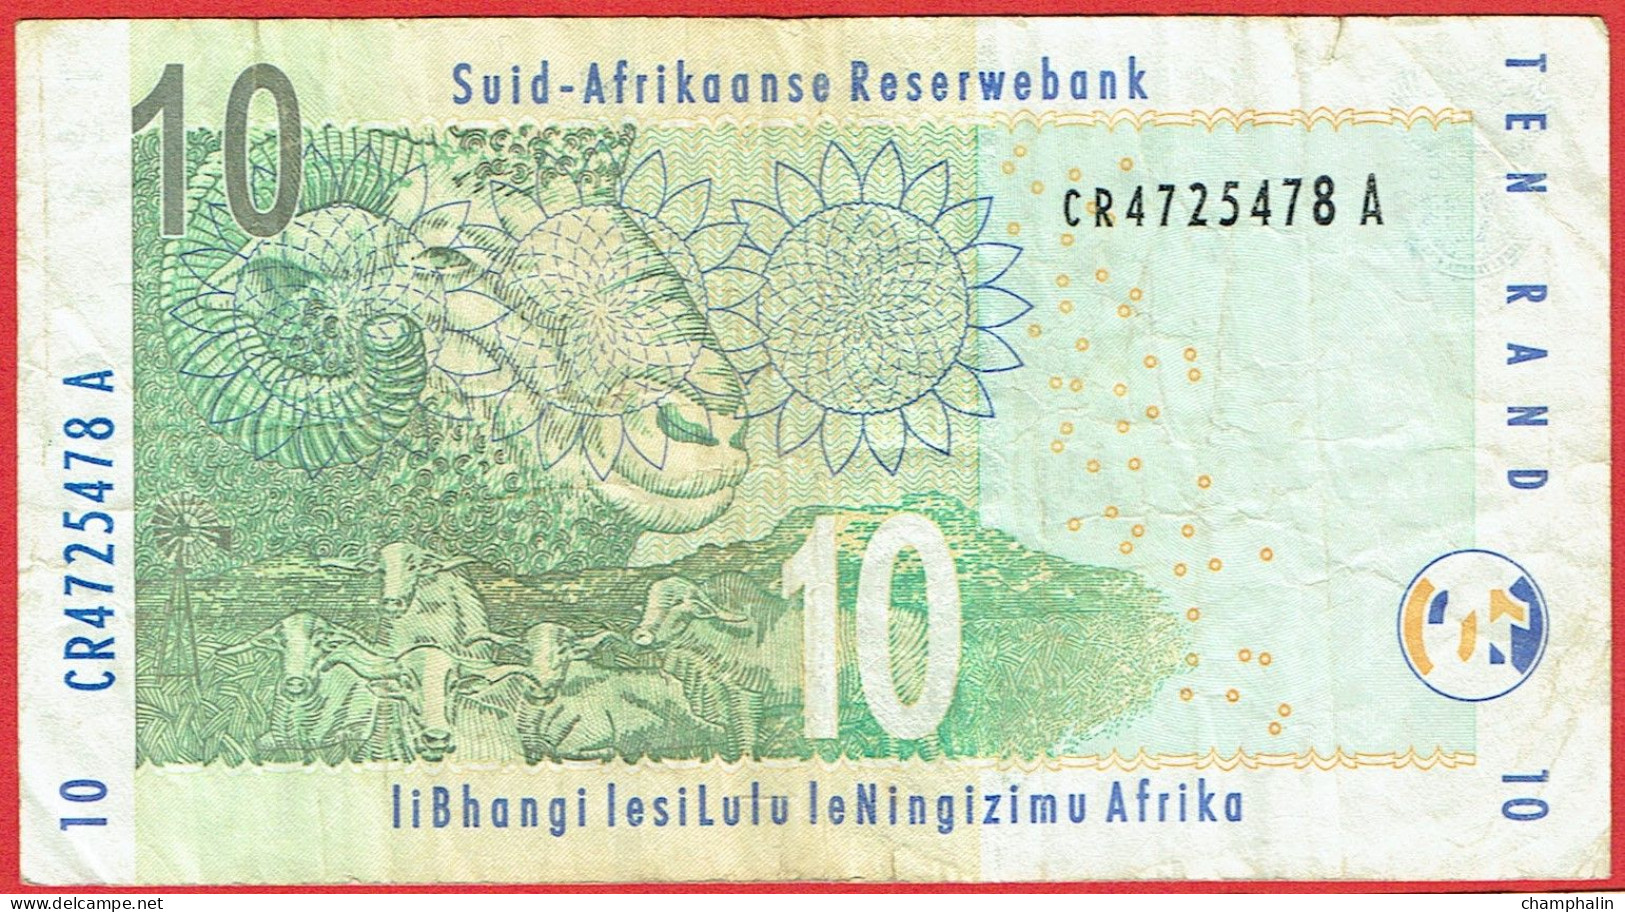 Afrique Du Sud - Billet De 10 Rand - Non Daté (1999) - P123b - Zuid-Afrika